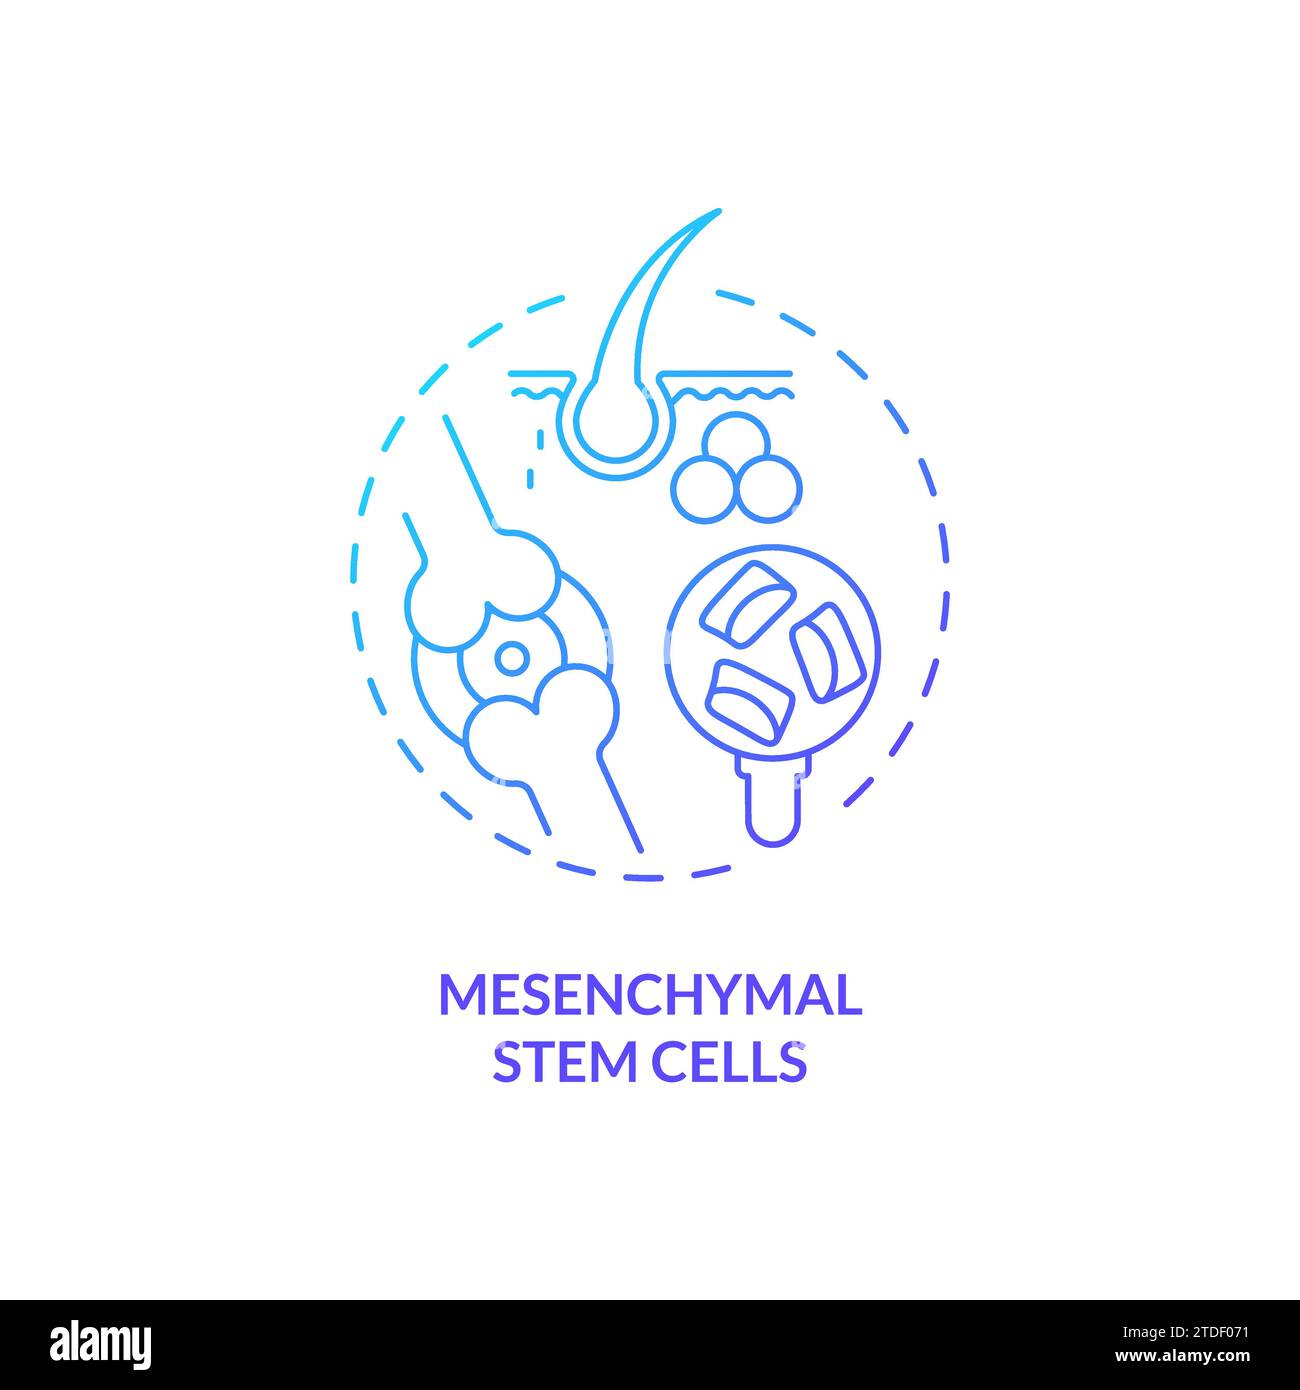 Konzept des Symbols für mesenchymale Stammzellen mit dünnem Linienverlauf Stock Vektor